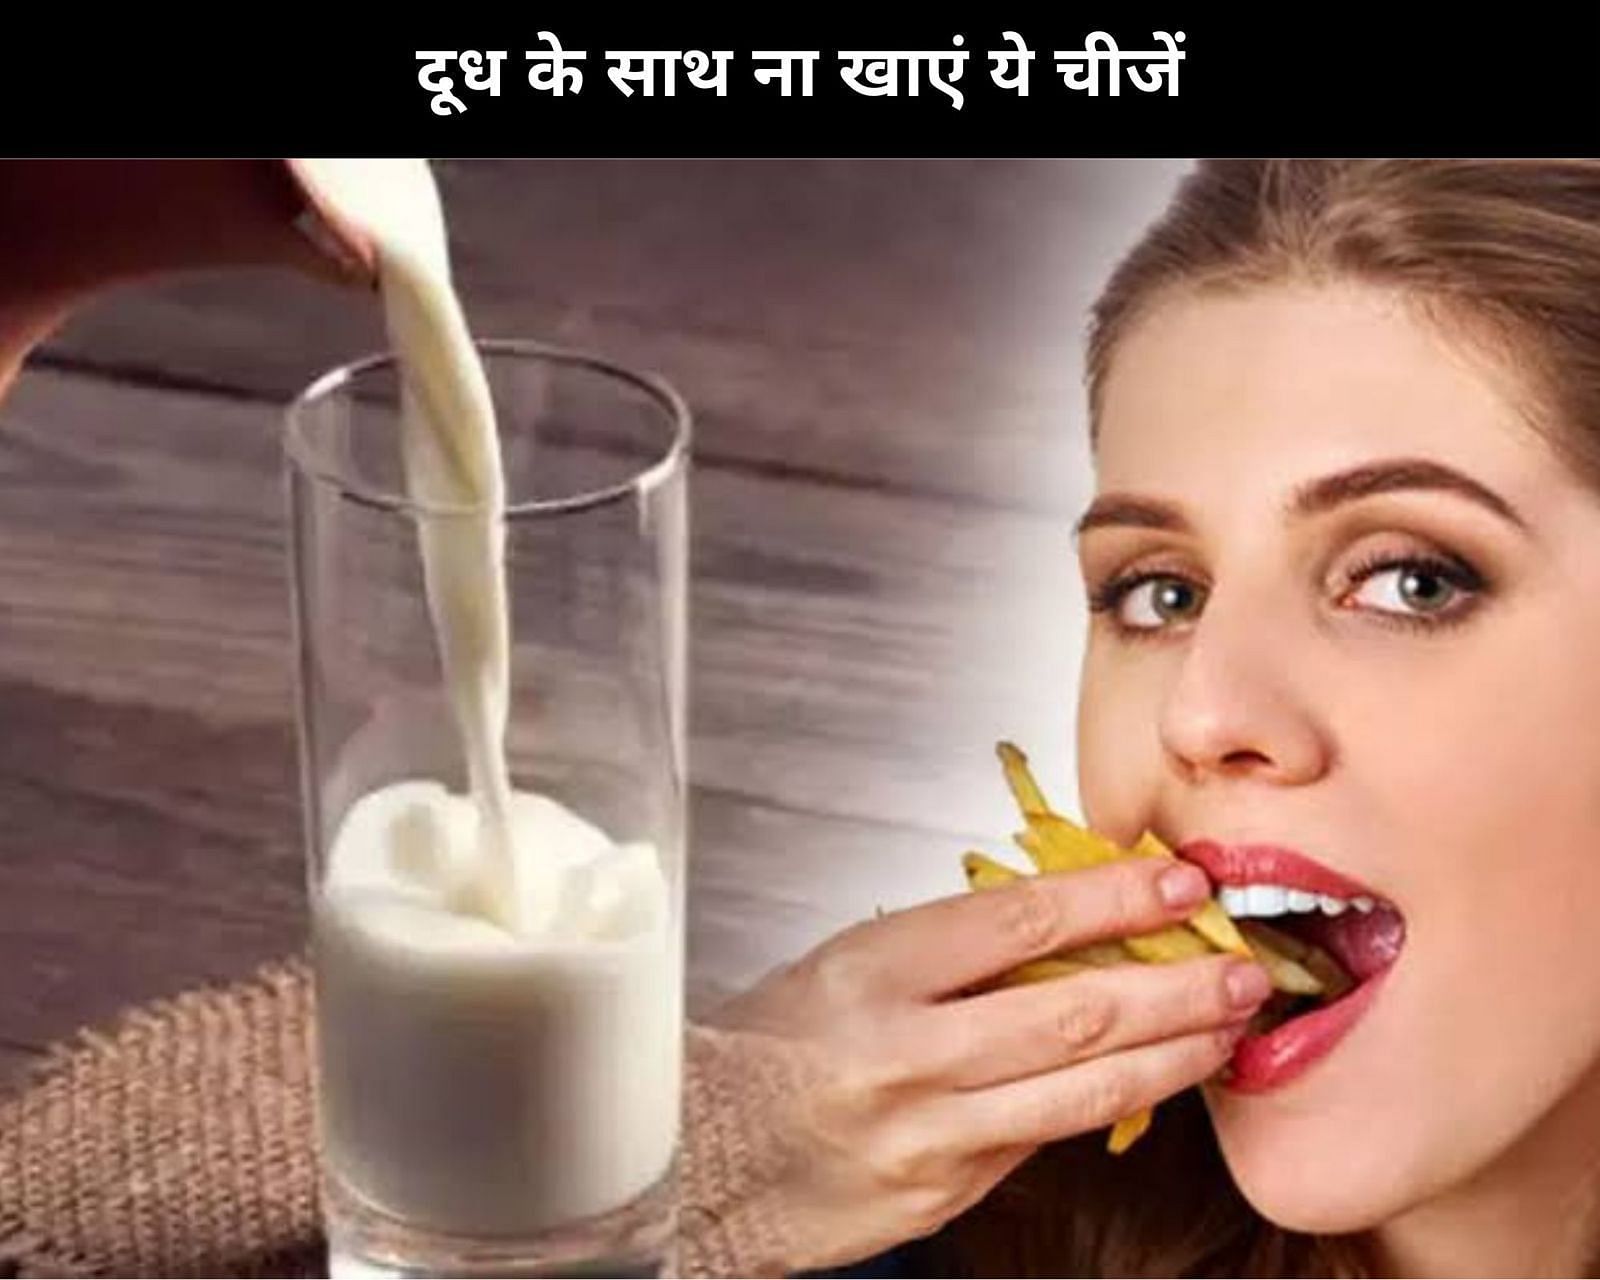 दूध के साथ ना खाएं ये 7 चीजें (फोटो - sportskeedaहिन्दी)